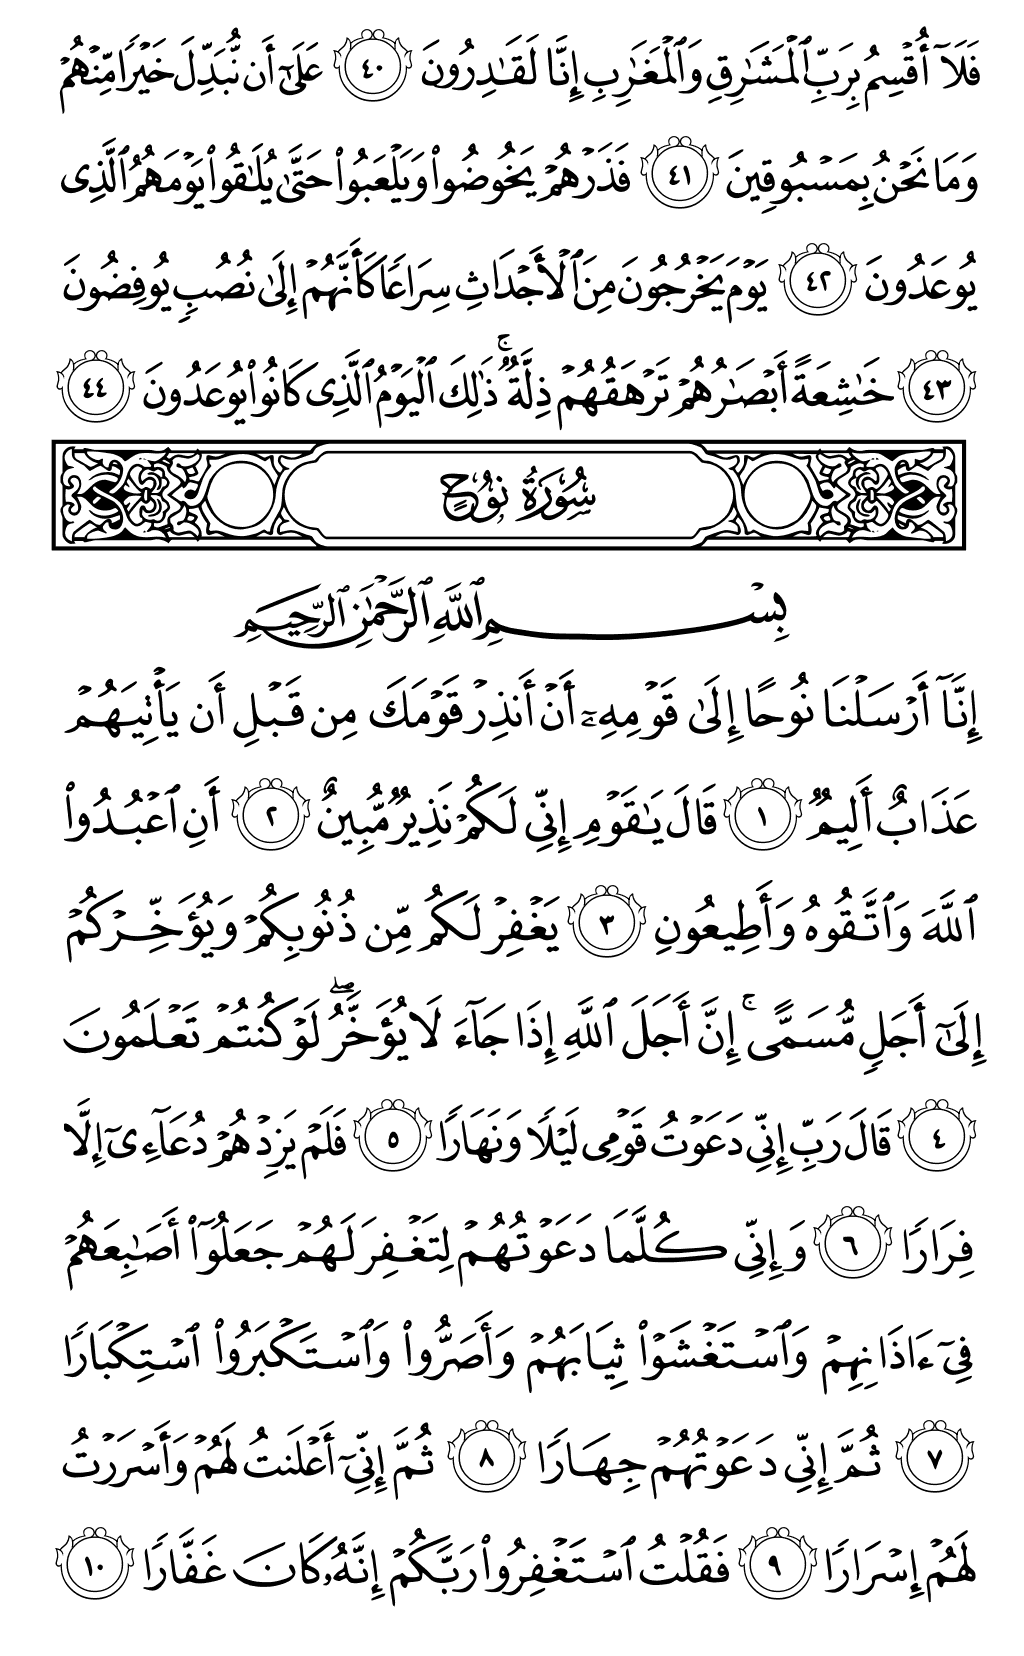 الصفحة رقم 570 من القرآن الكريم